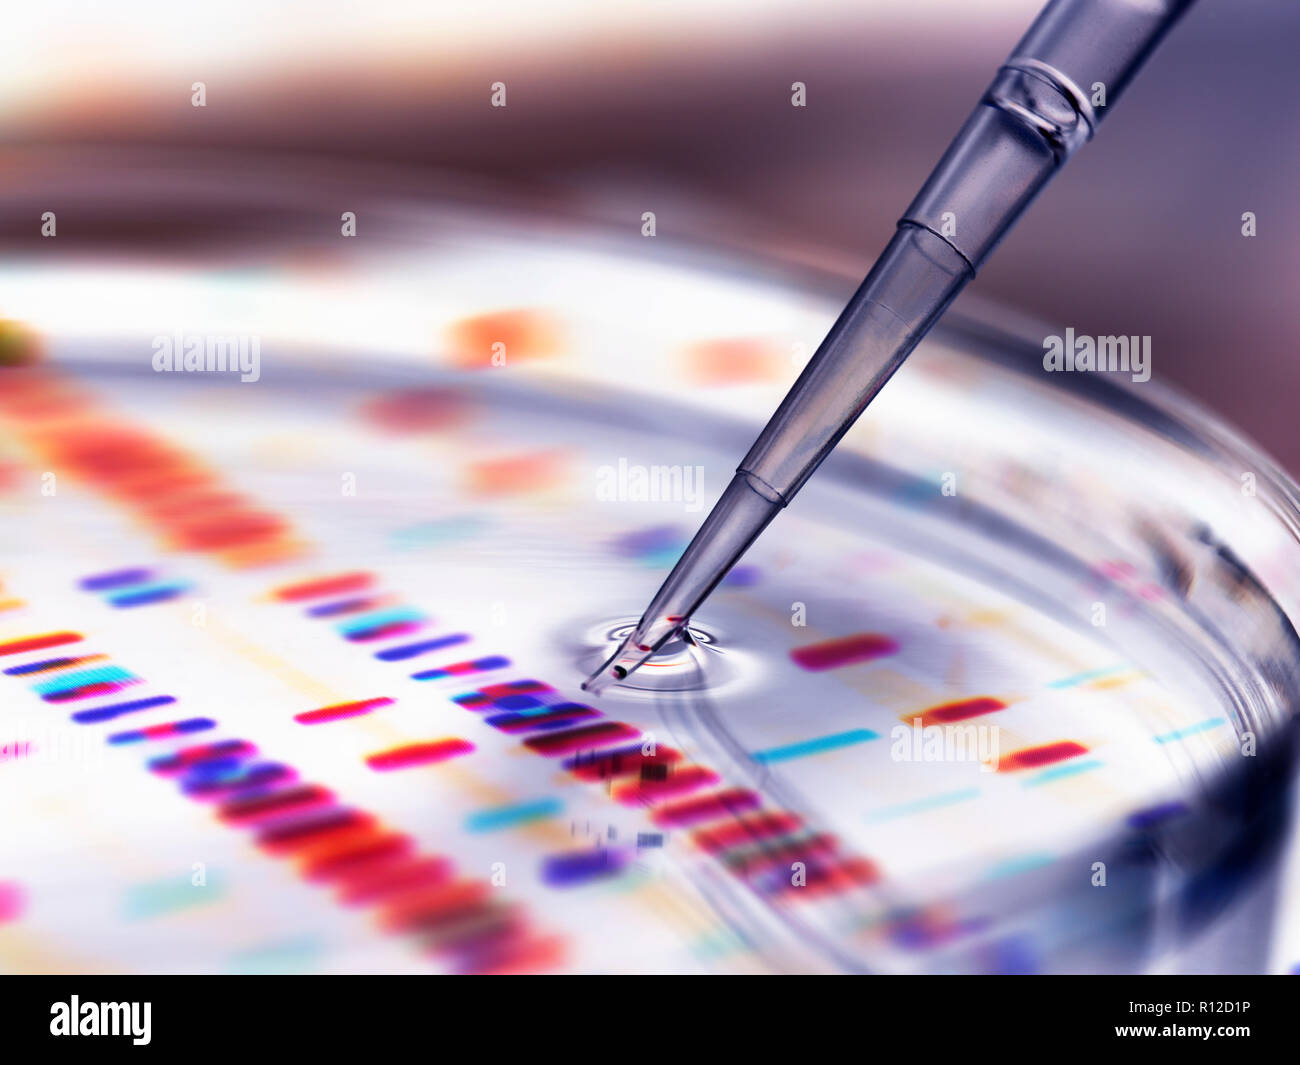 Pipeta añadiendo a la muestra de petri con los perfiles de ADN en segundo plano. Foto de stock